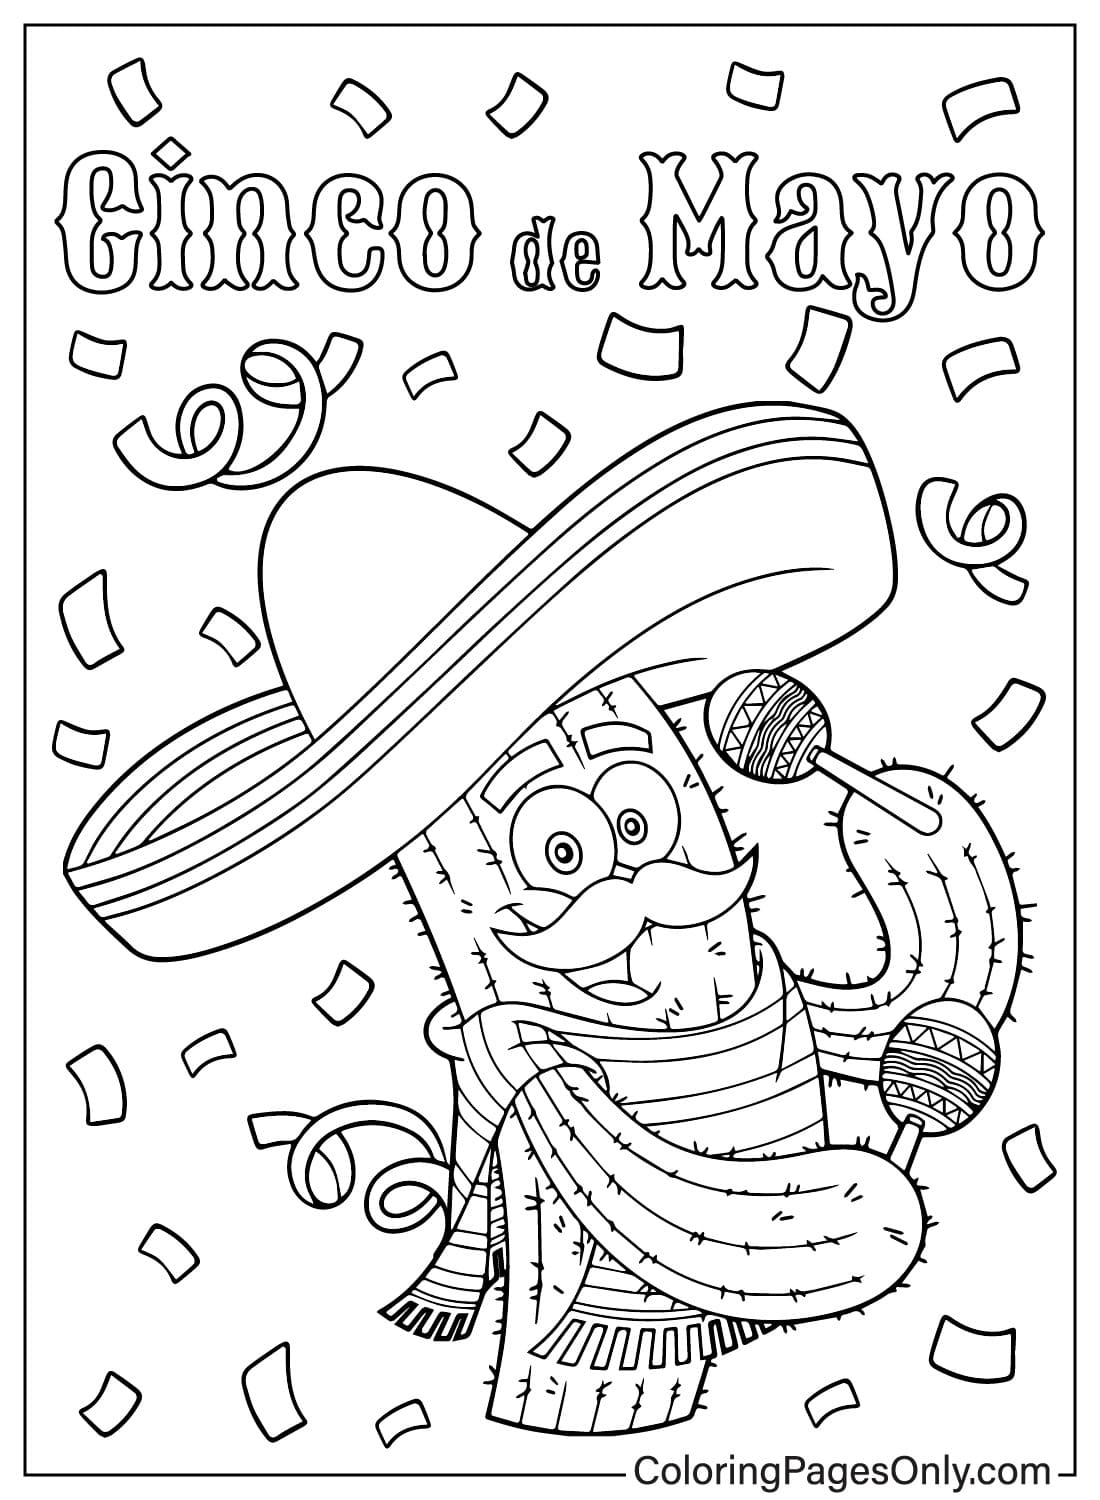 Personaje de dibujos animados de cactus mexicano feliz agitando maracas del Cinco de Mayo